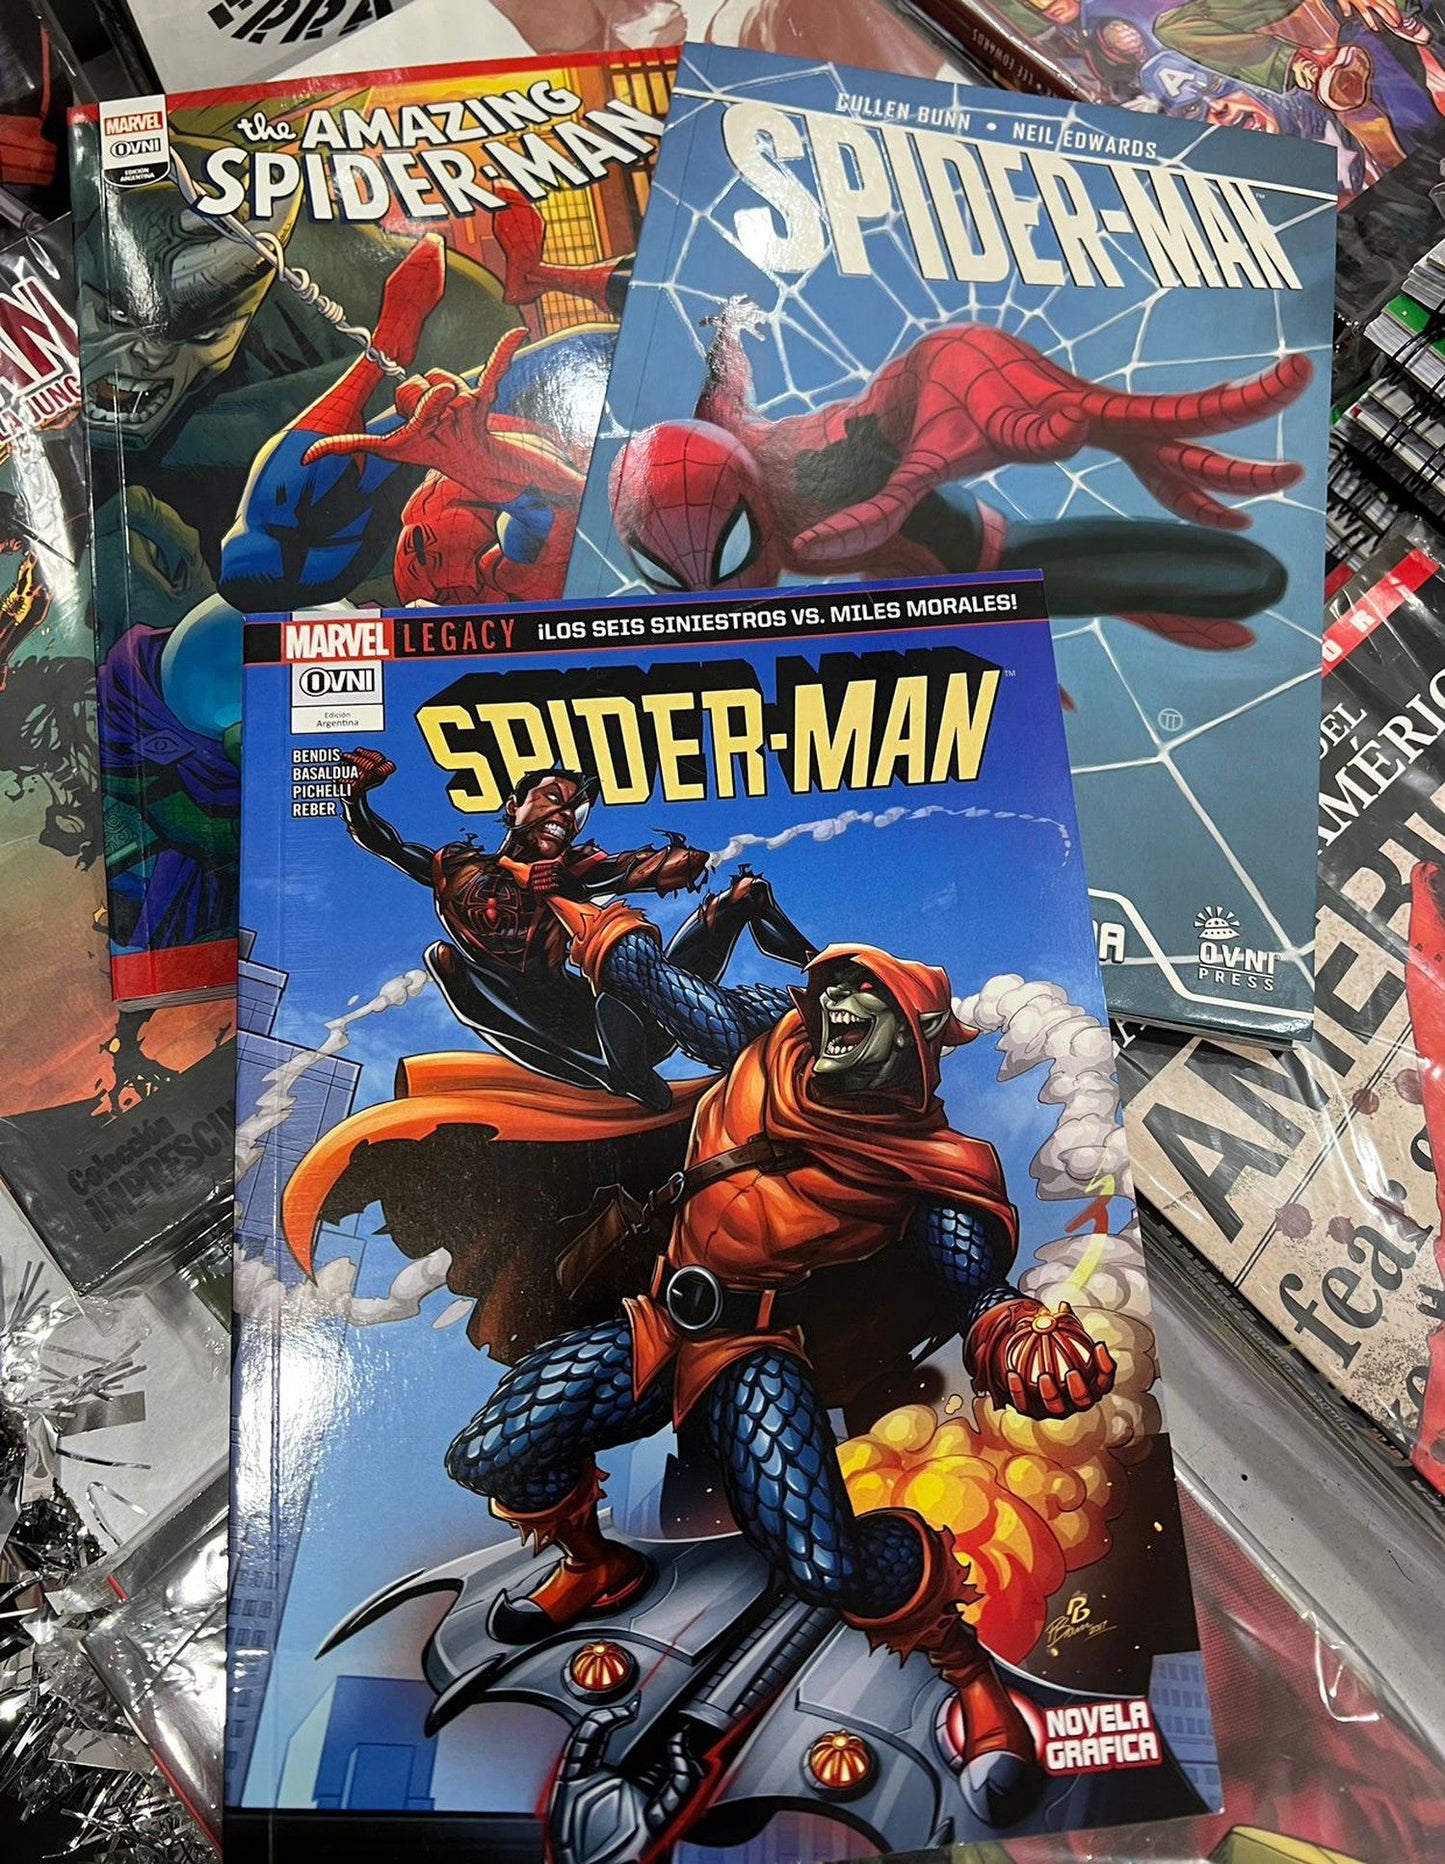 Pack Spider-man historias completas. OVNI Press ENcuadrocomics